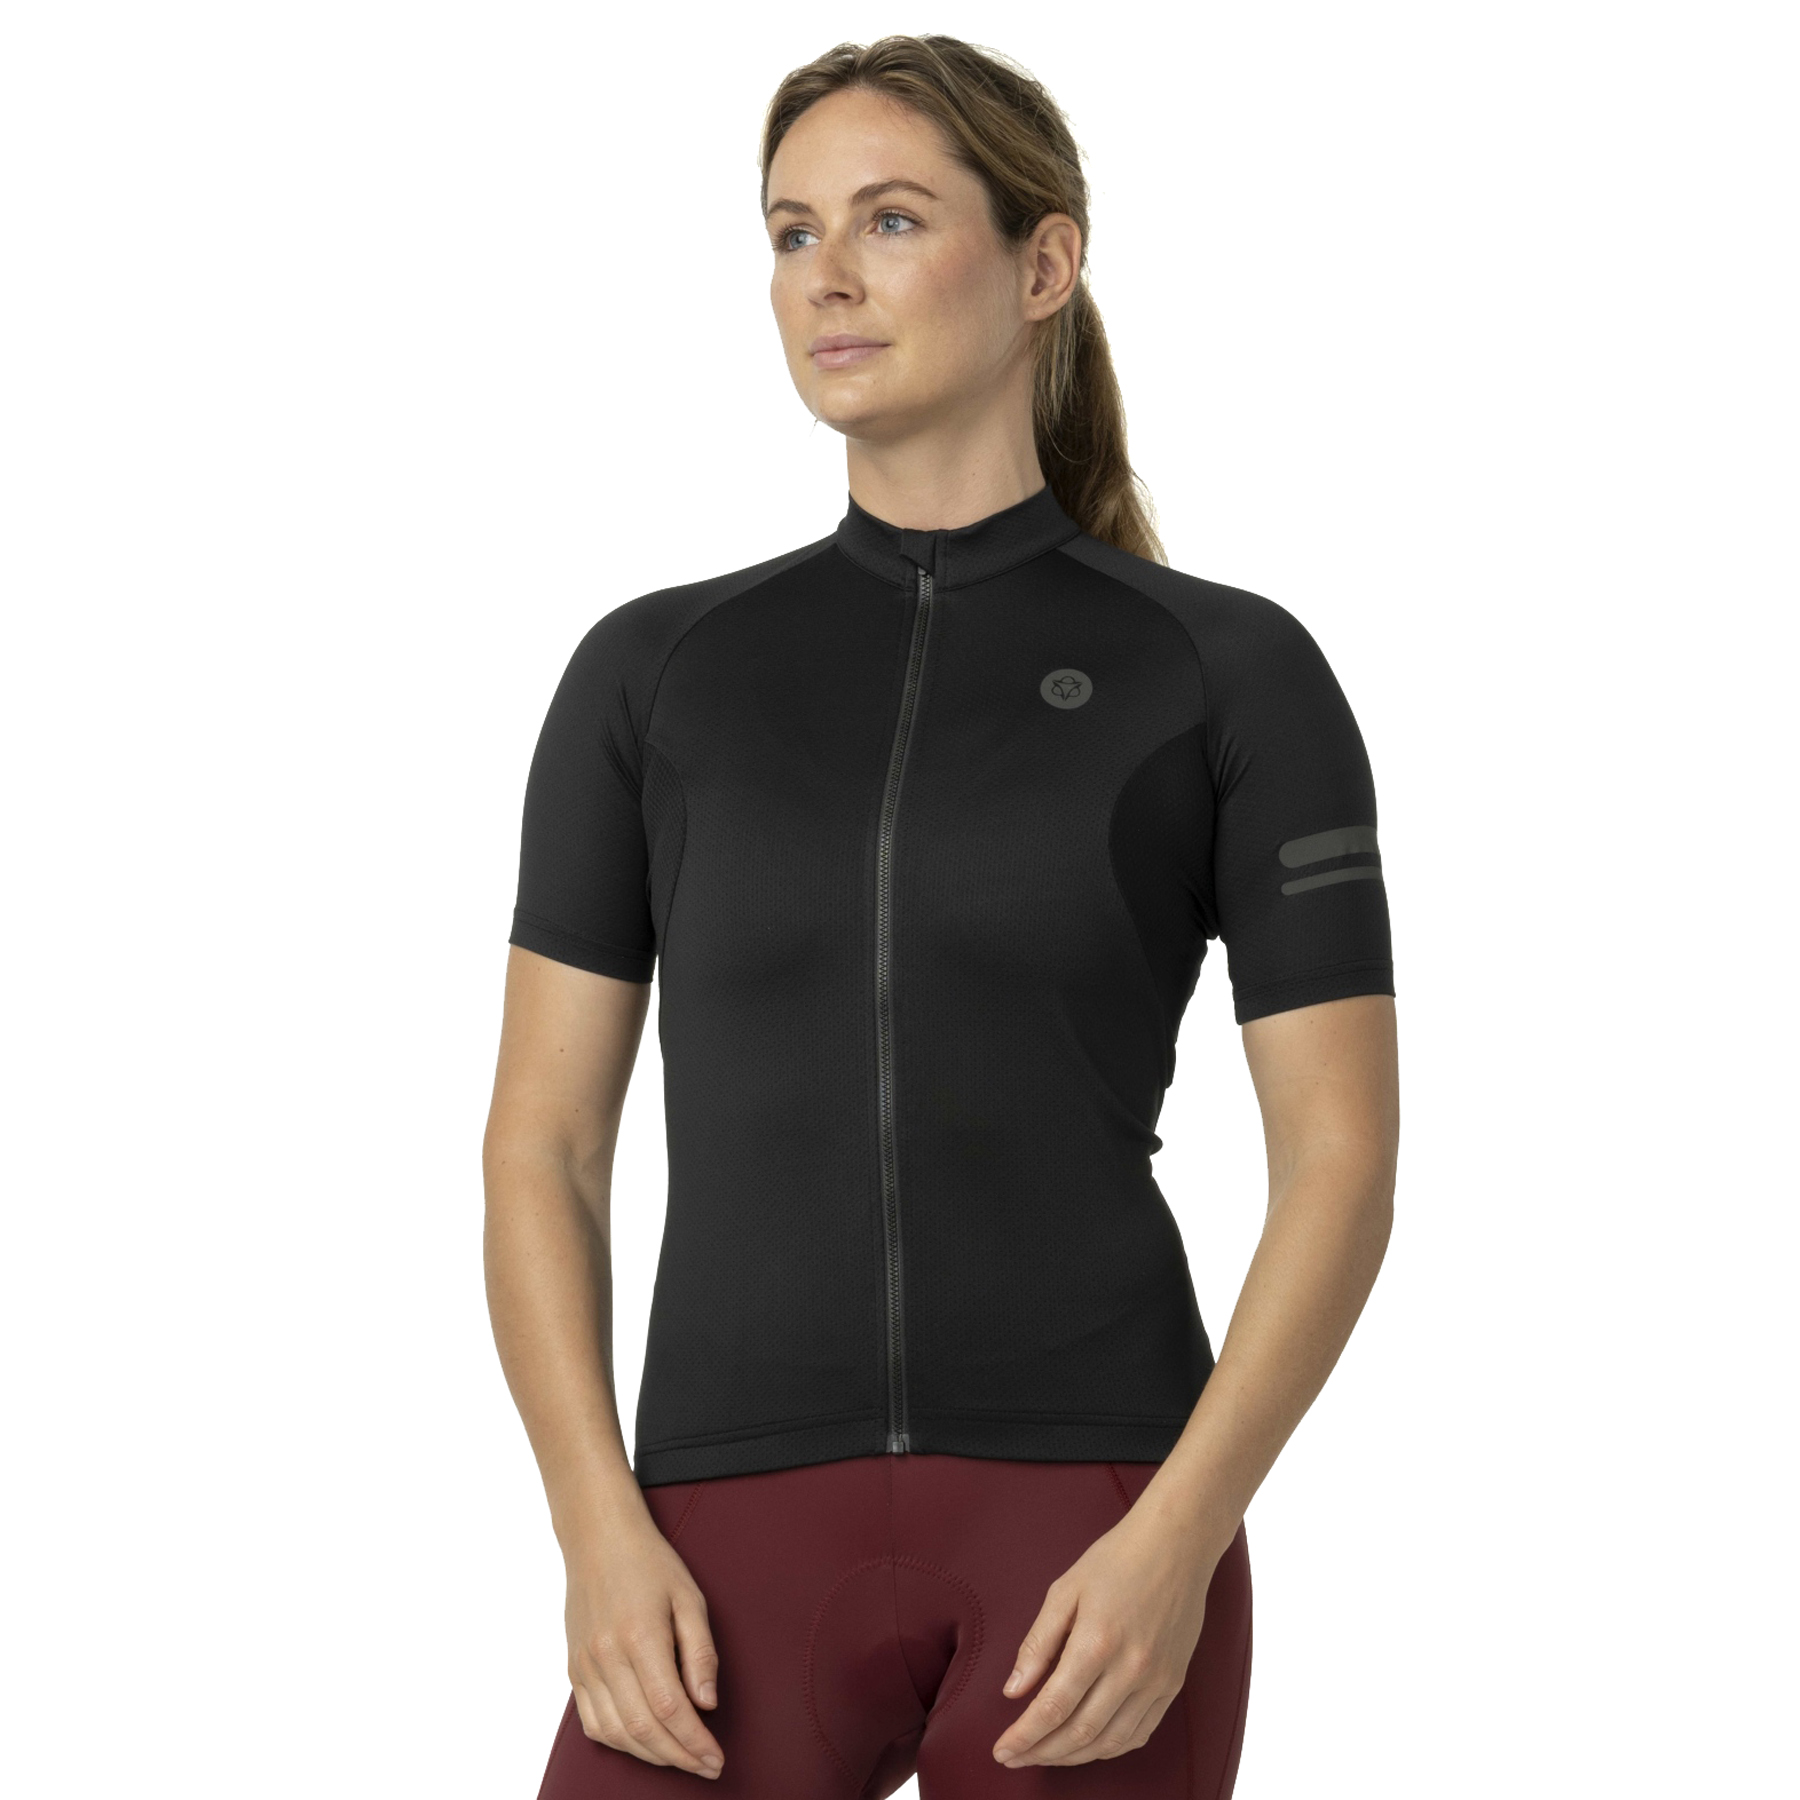 Productfoto van AGU Essential Core Shirt met Korte Mouwen Dames - zwart